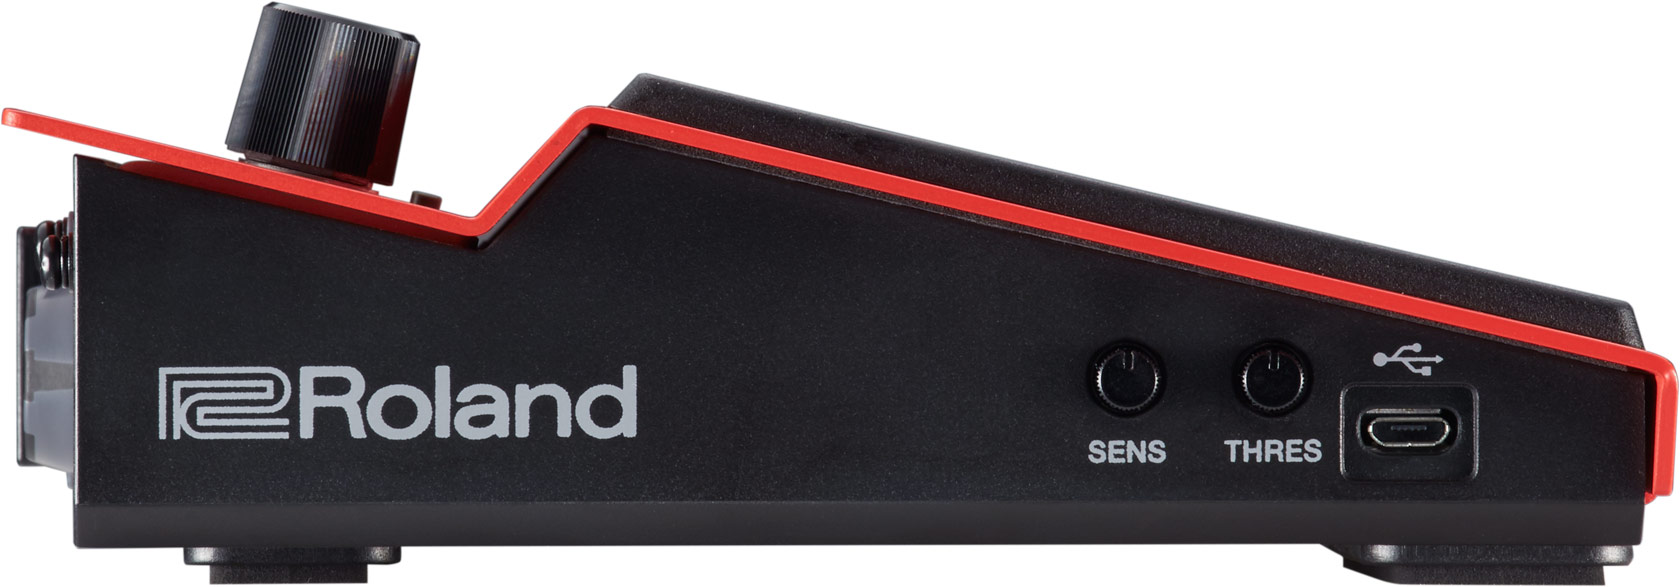 Roland Spd One W Wave - Pad para batería electrónica - Variation 3